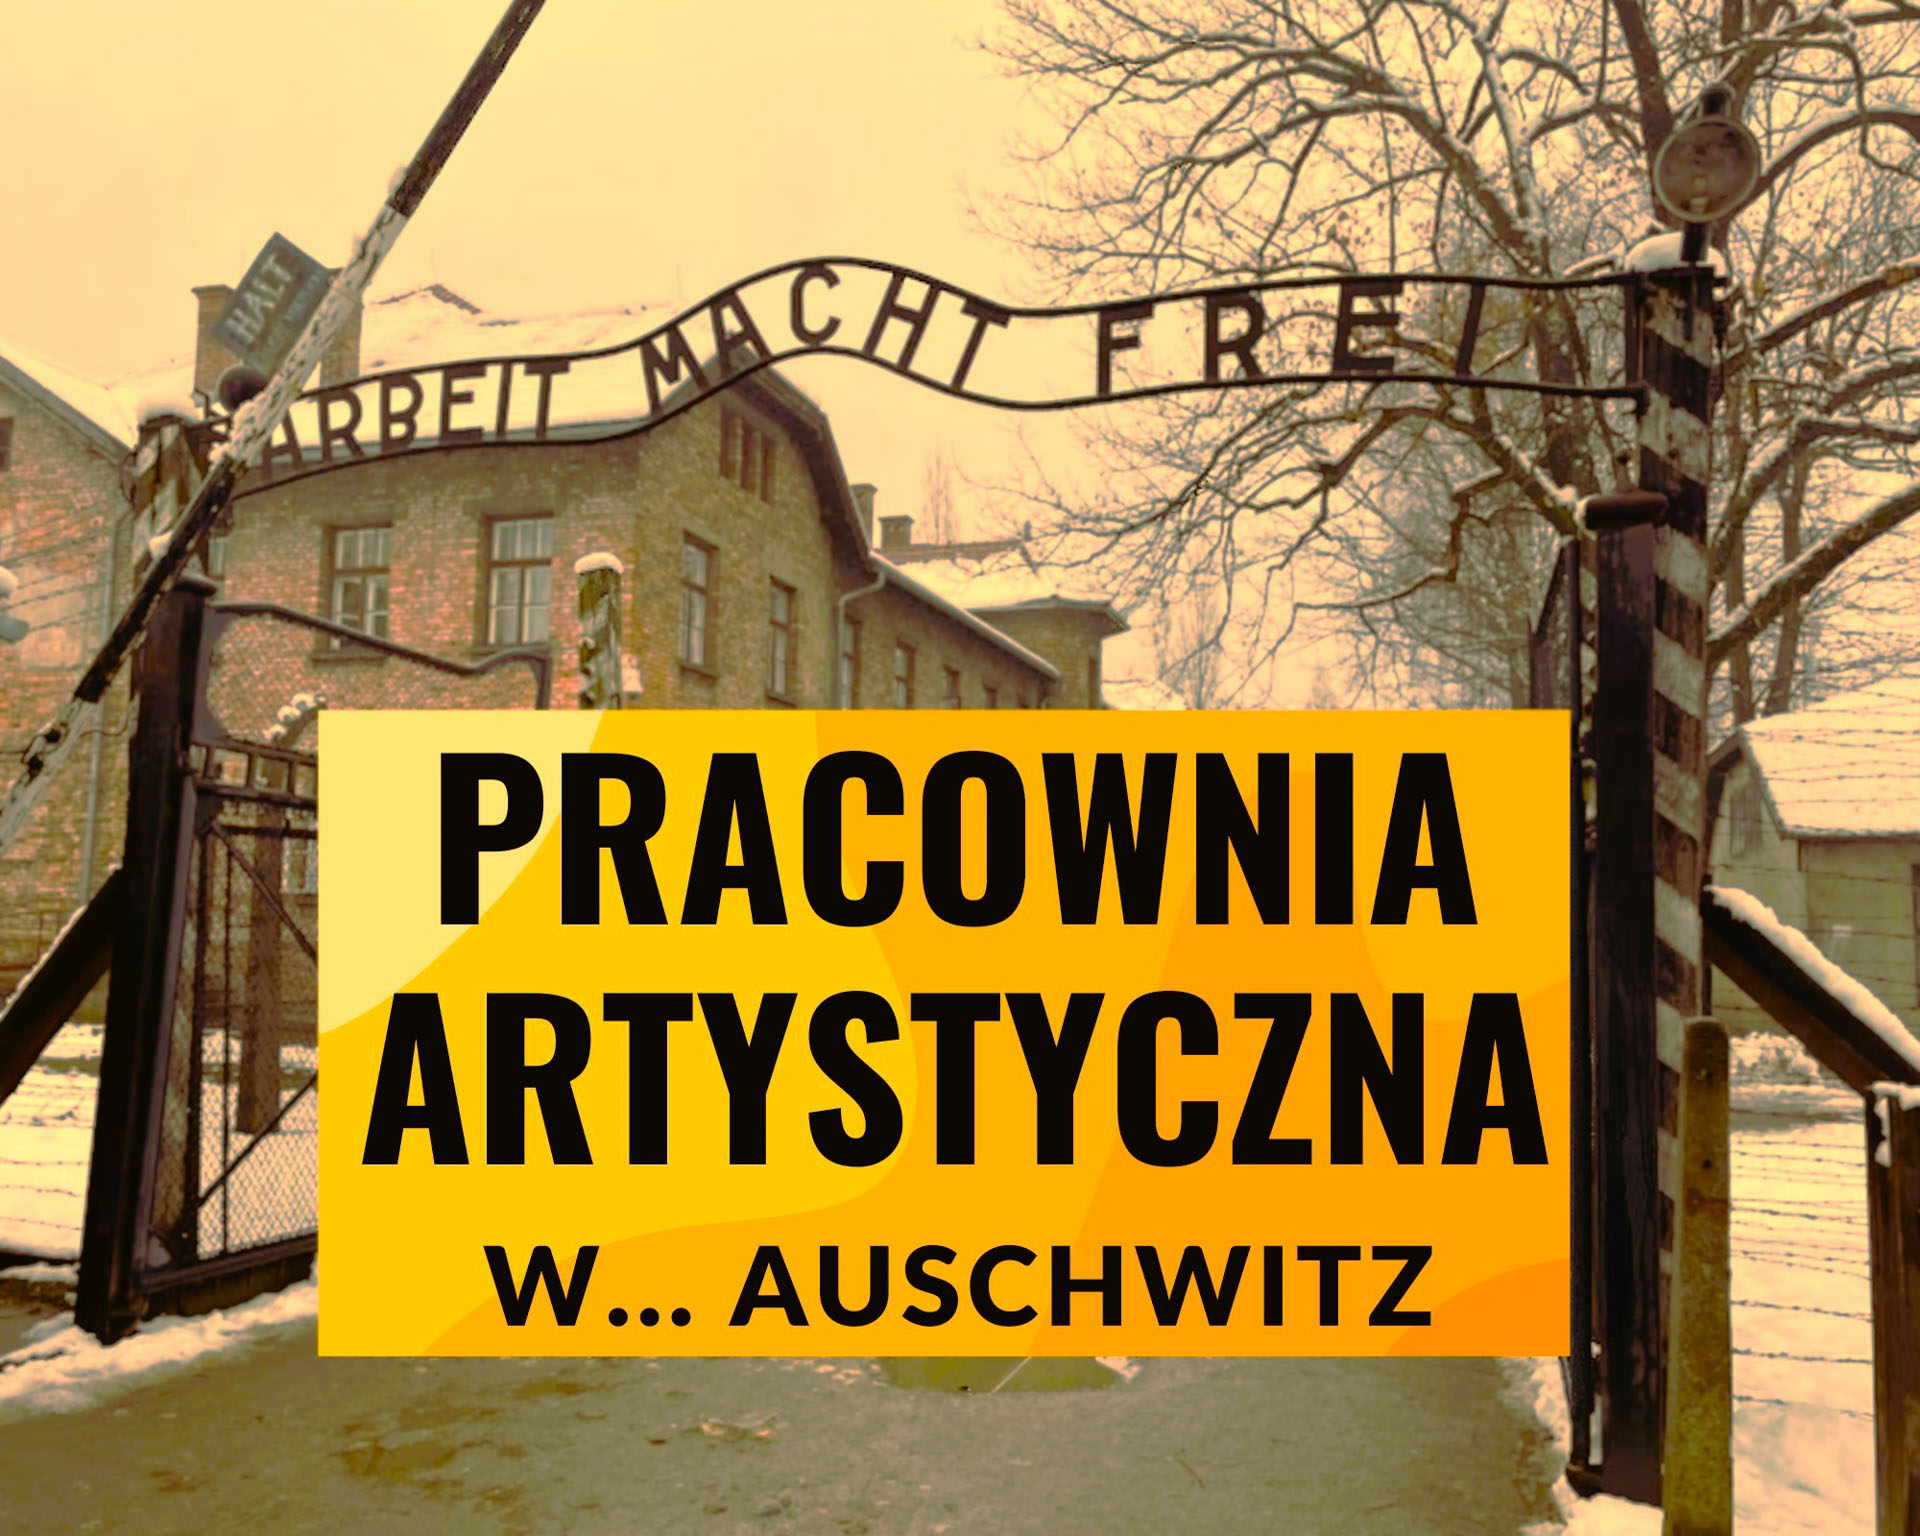 Pracownia artystyczna… w Auschwitz